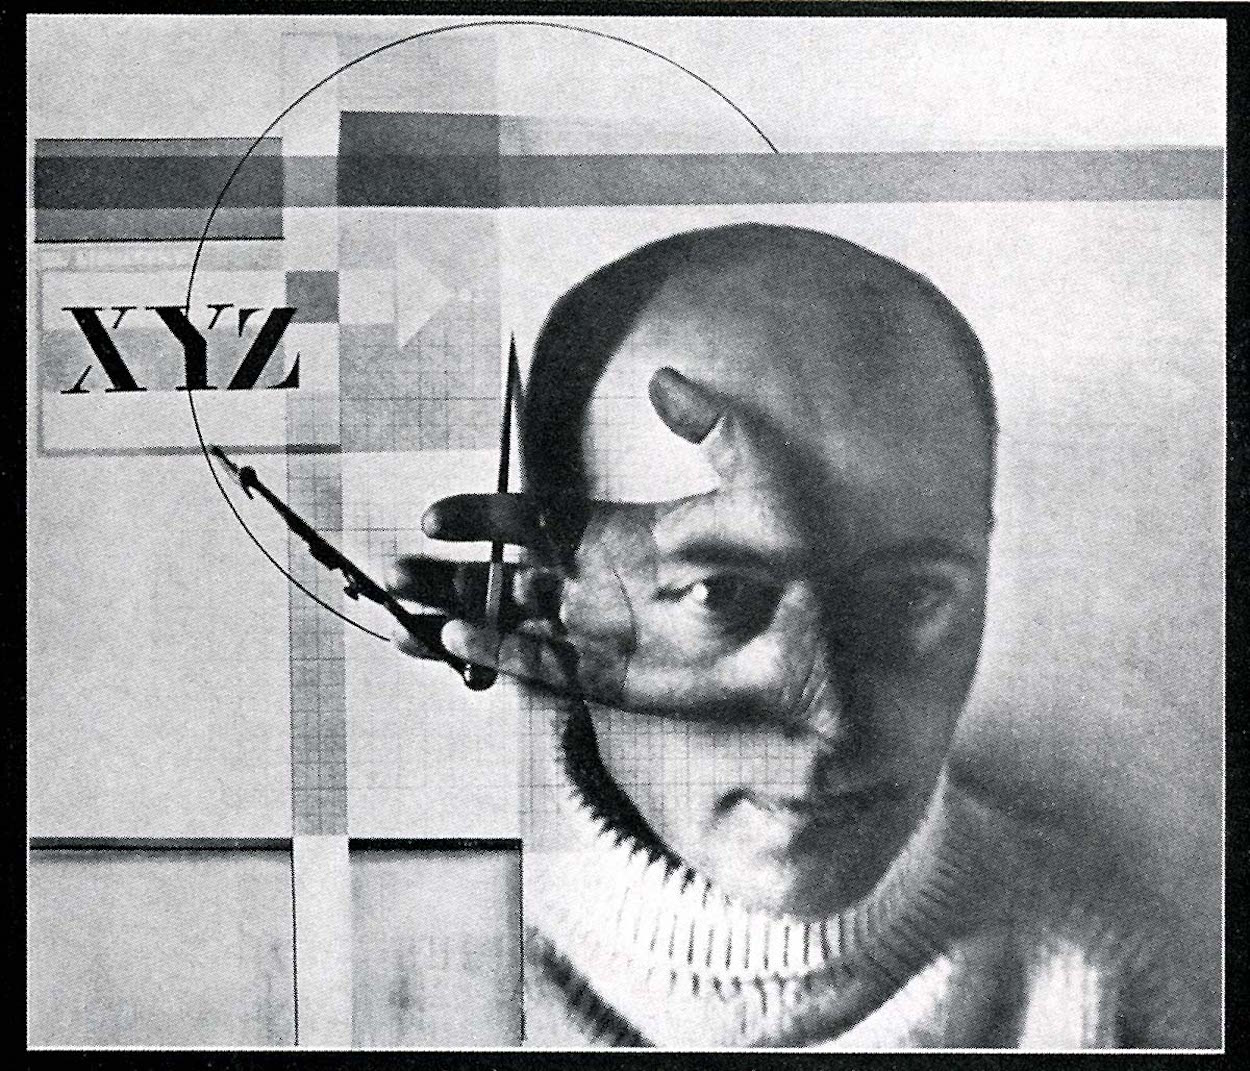 El Lissitzky - 23 de Novembro, 1890 - 30 de Dezembro, 1941